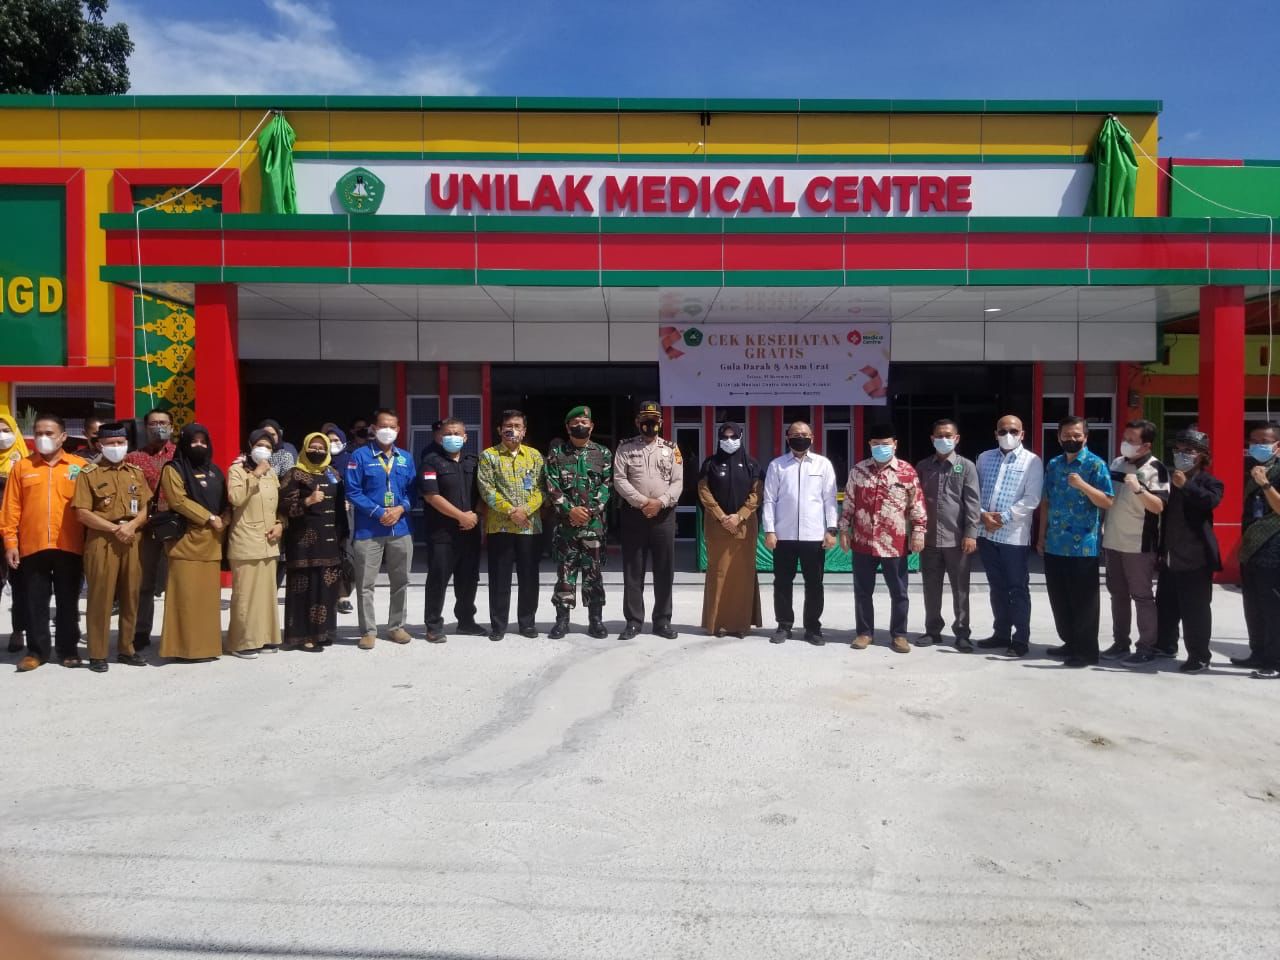 Unilak Medical Centre Berdiri, Masyarakat Bisa Mendapatkan Layanan Kesehatan